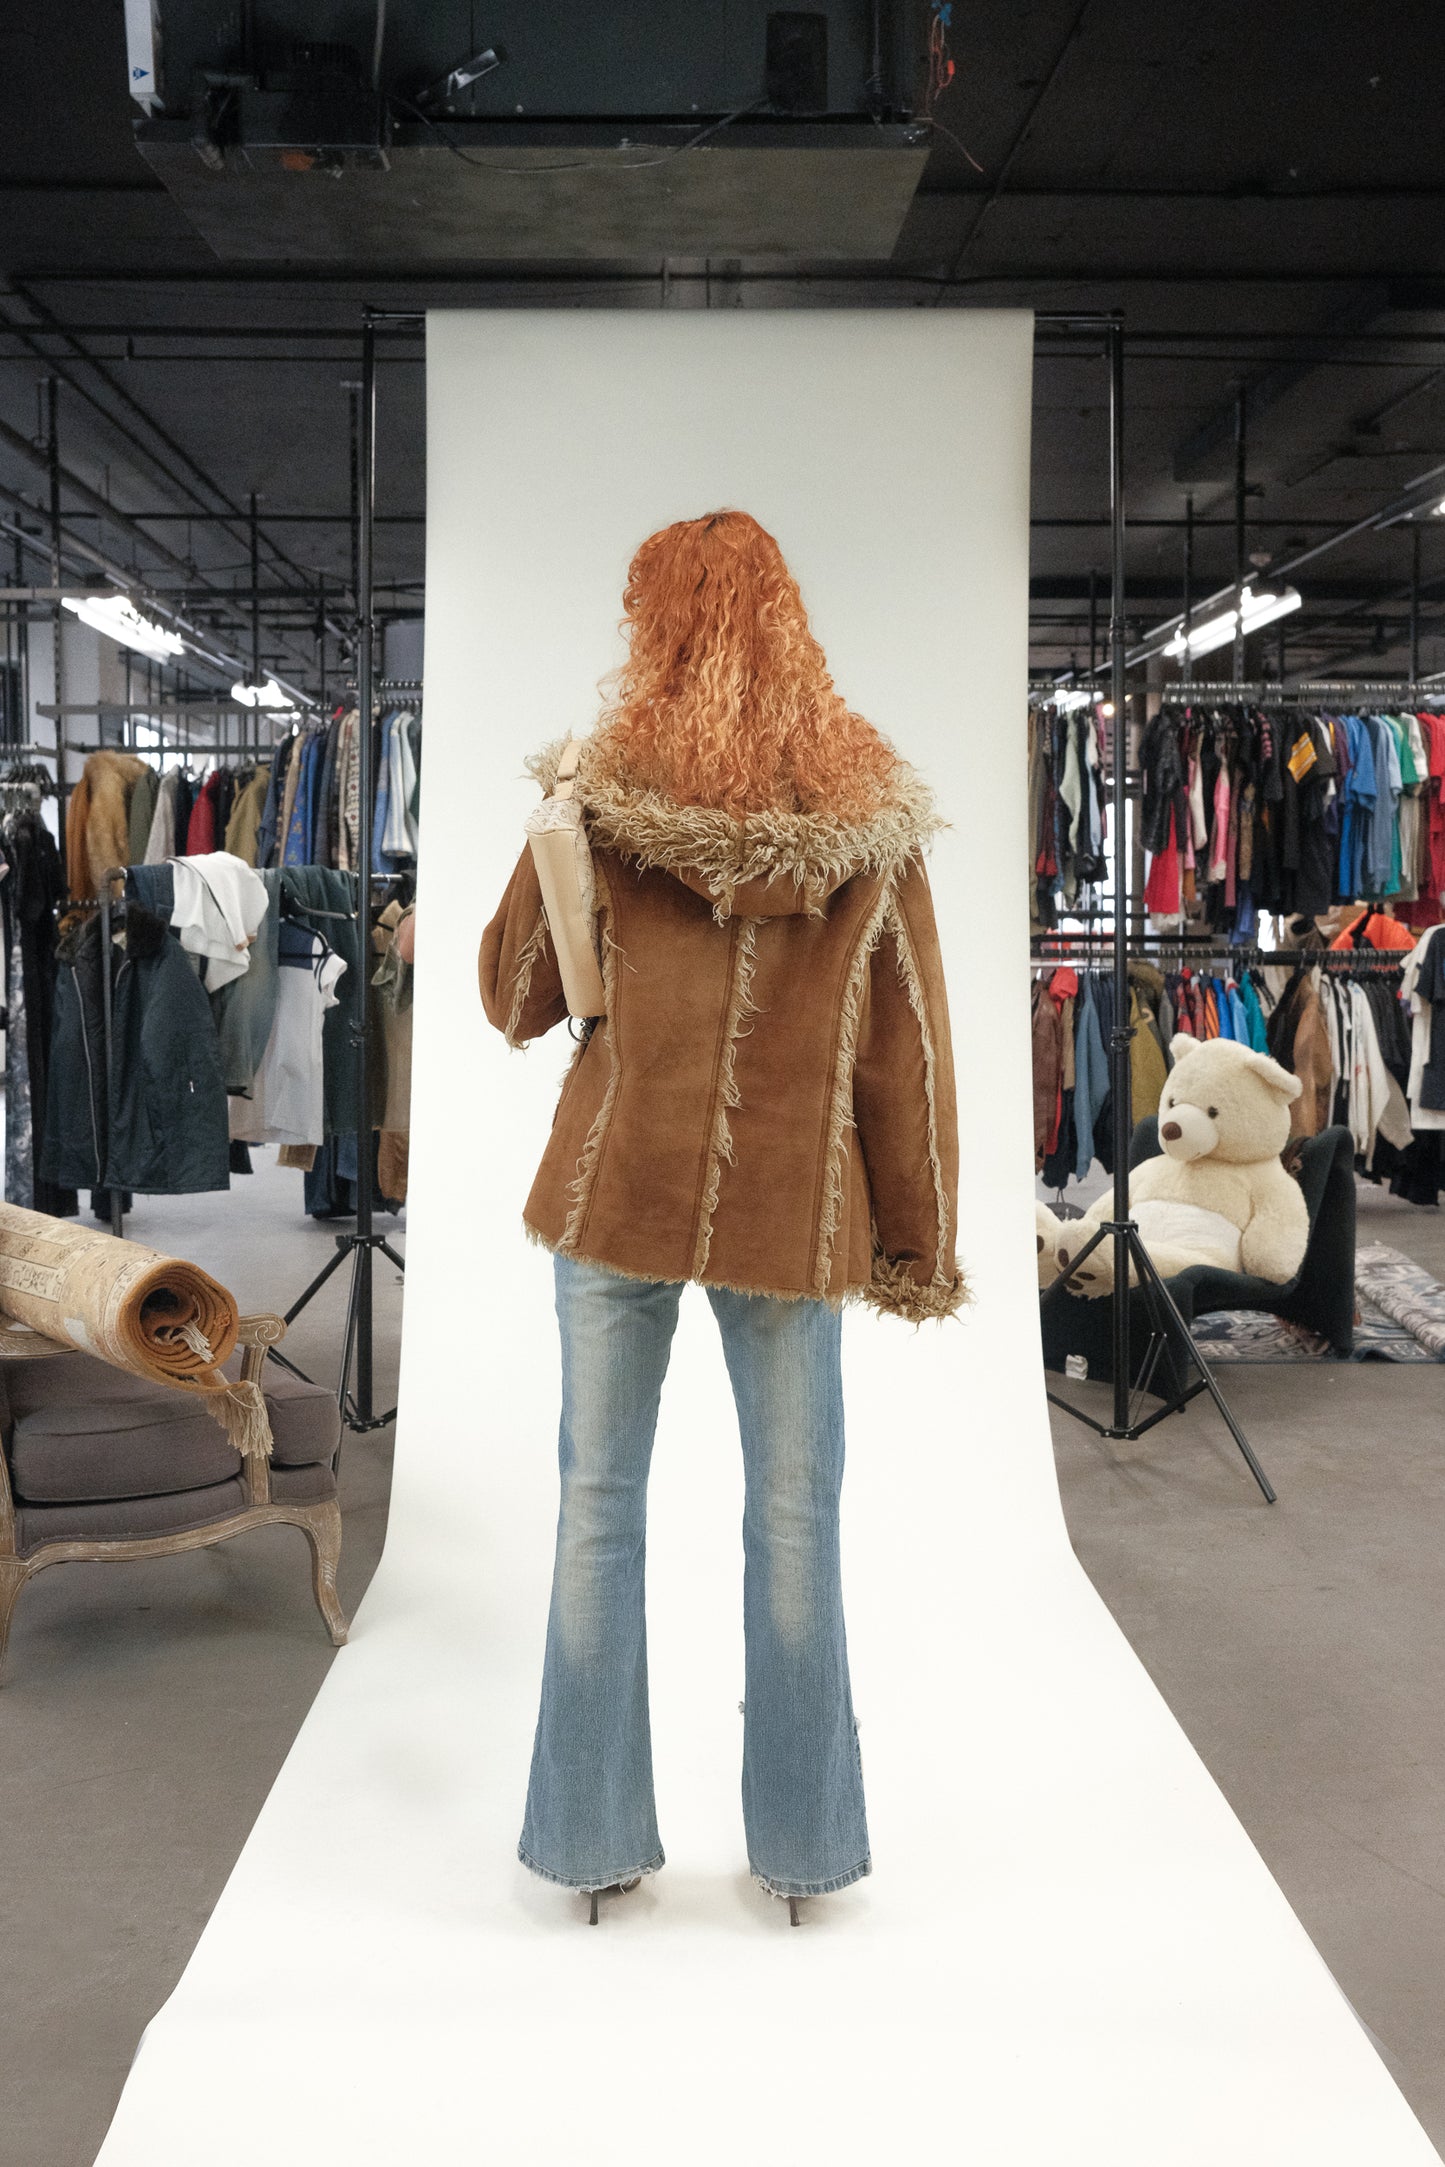 Y2K 'Point Zero' Faux Suede/Fur "Penny Lane"-Style Jacket (Women's M)